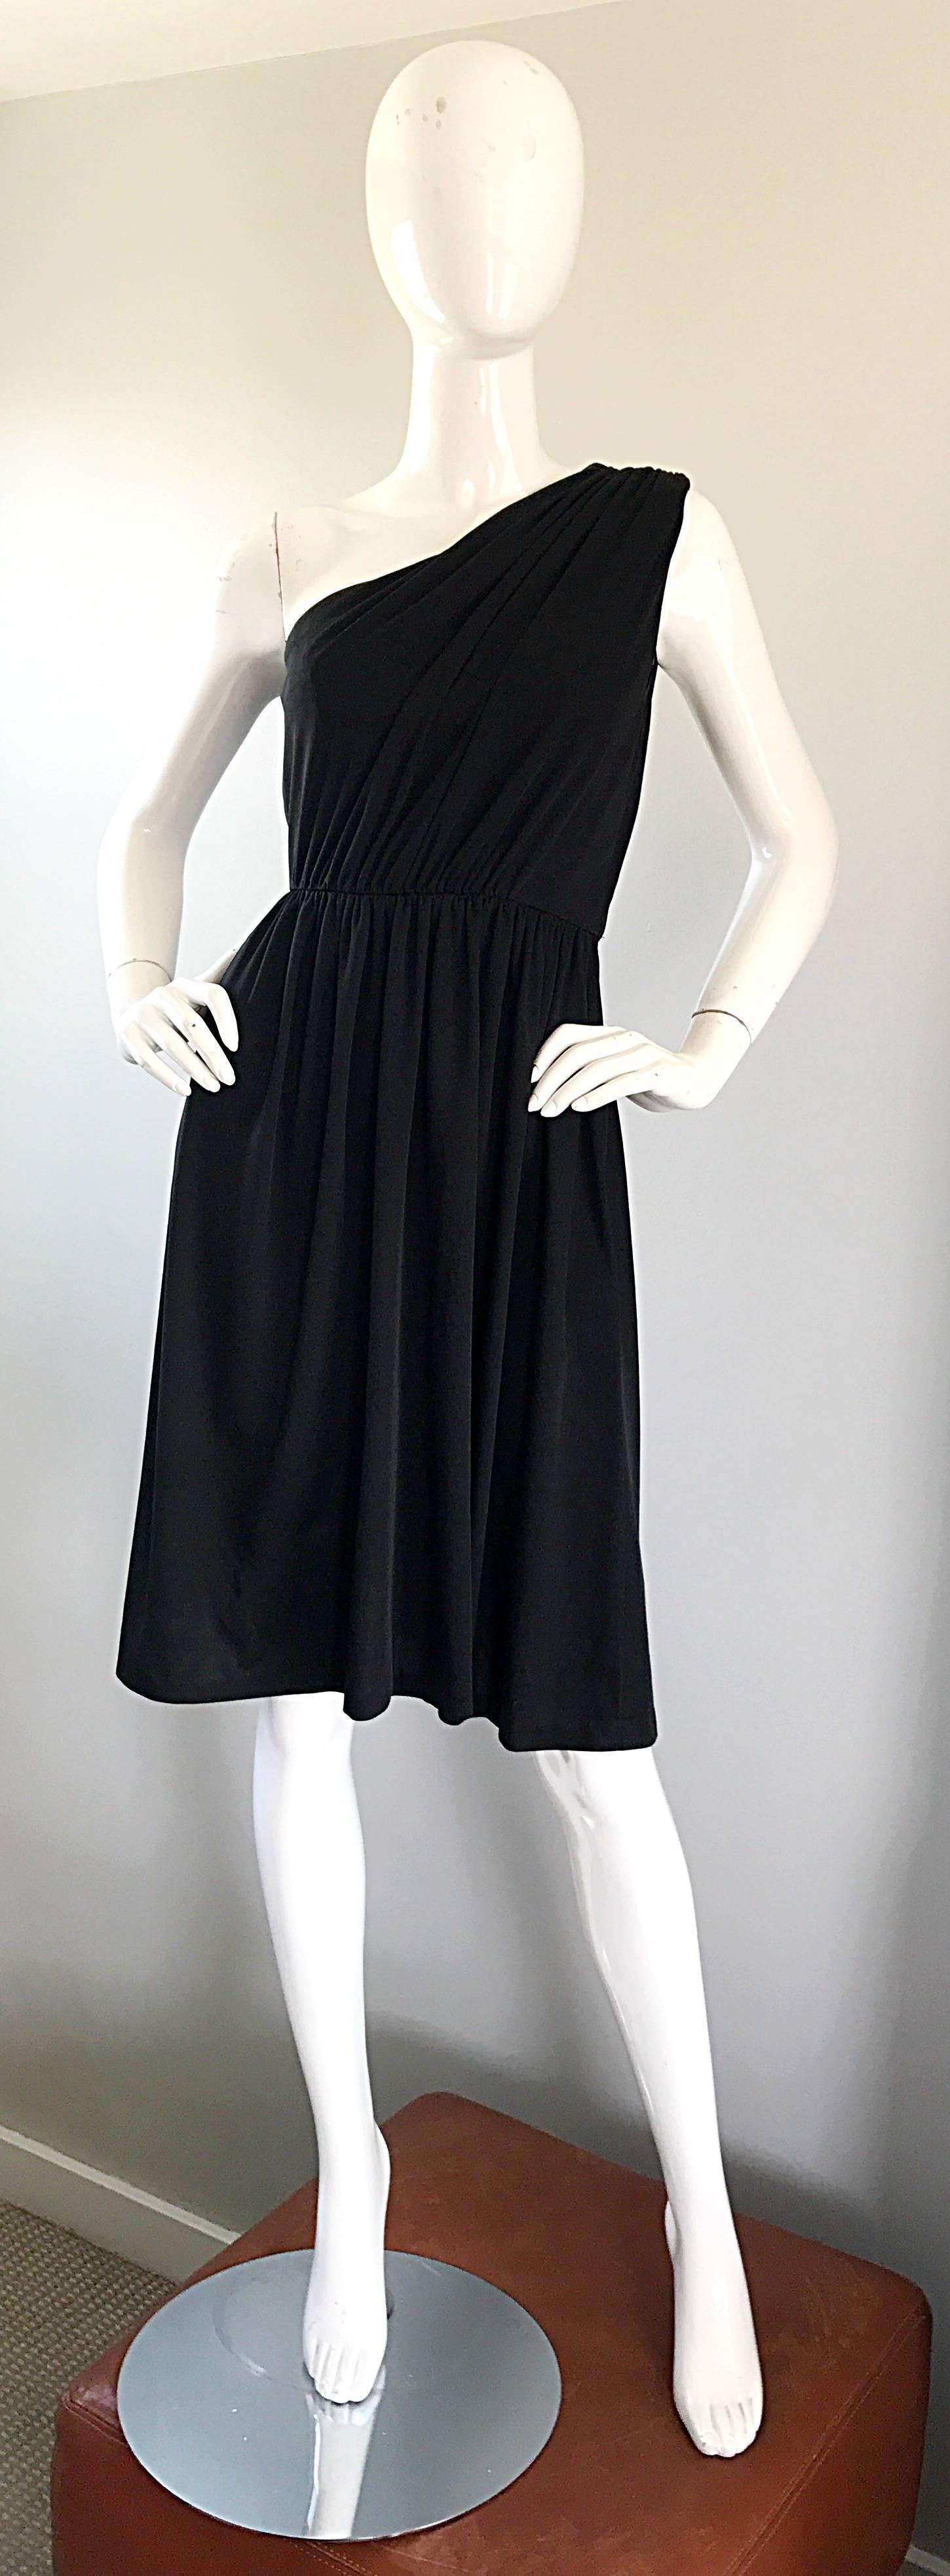 Superbe robe vintage des années 1970 en jersey noir à une épaule, signée ANTHONY MUTO pour JOSPEH MAGNIN ! Un corsage magnifiquement drapé, avec une jupe fluide au genou. Une telle attention aux détails a été apportée à la construction de ce joyau.